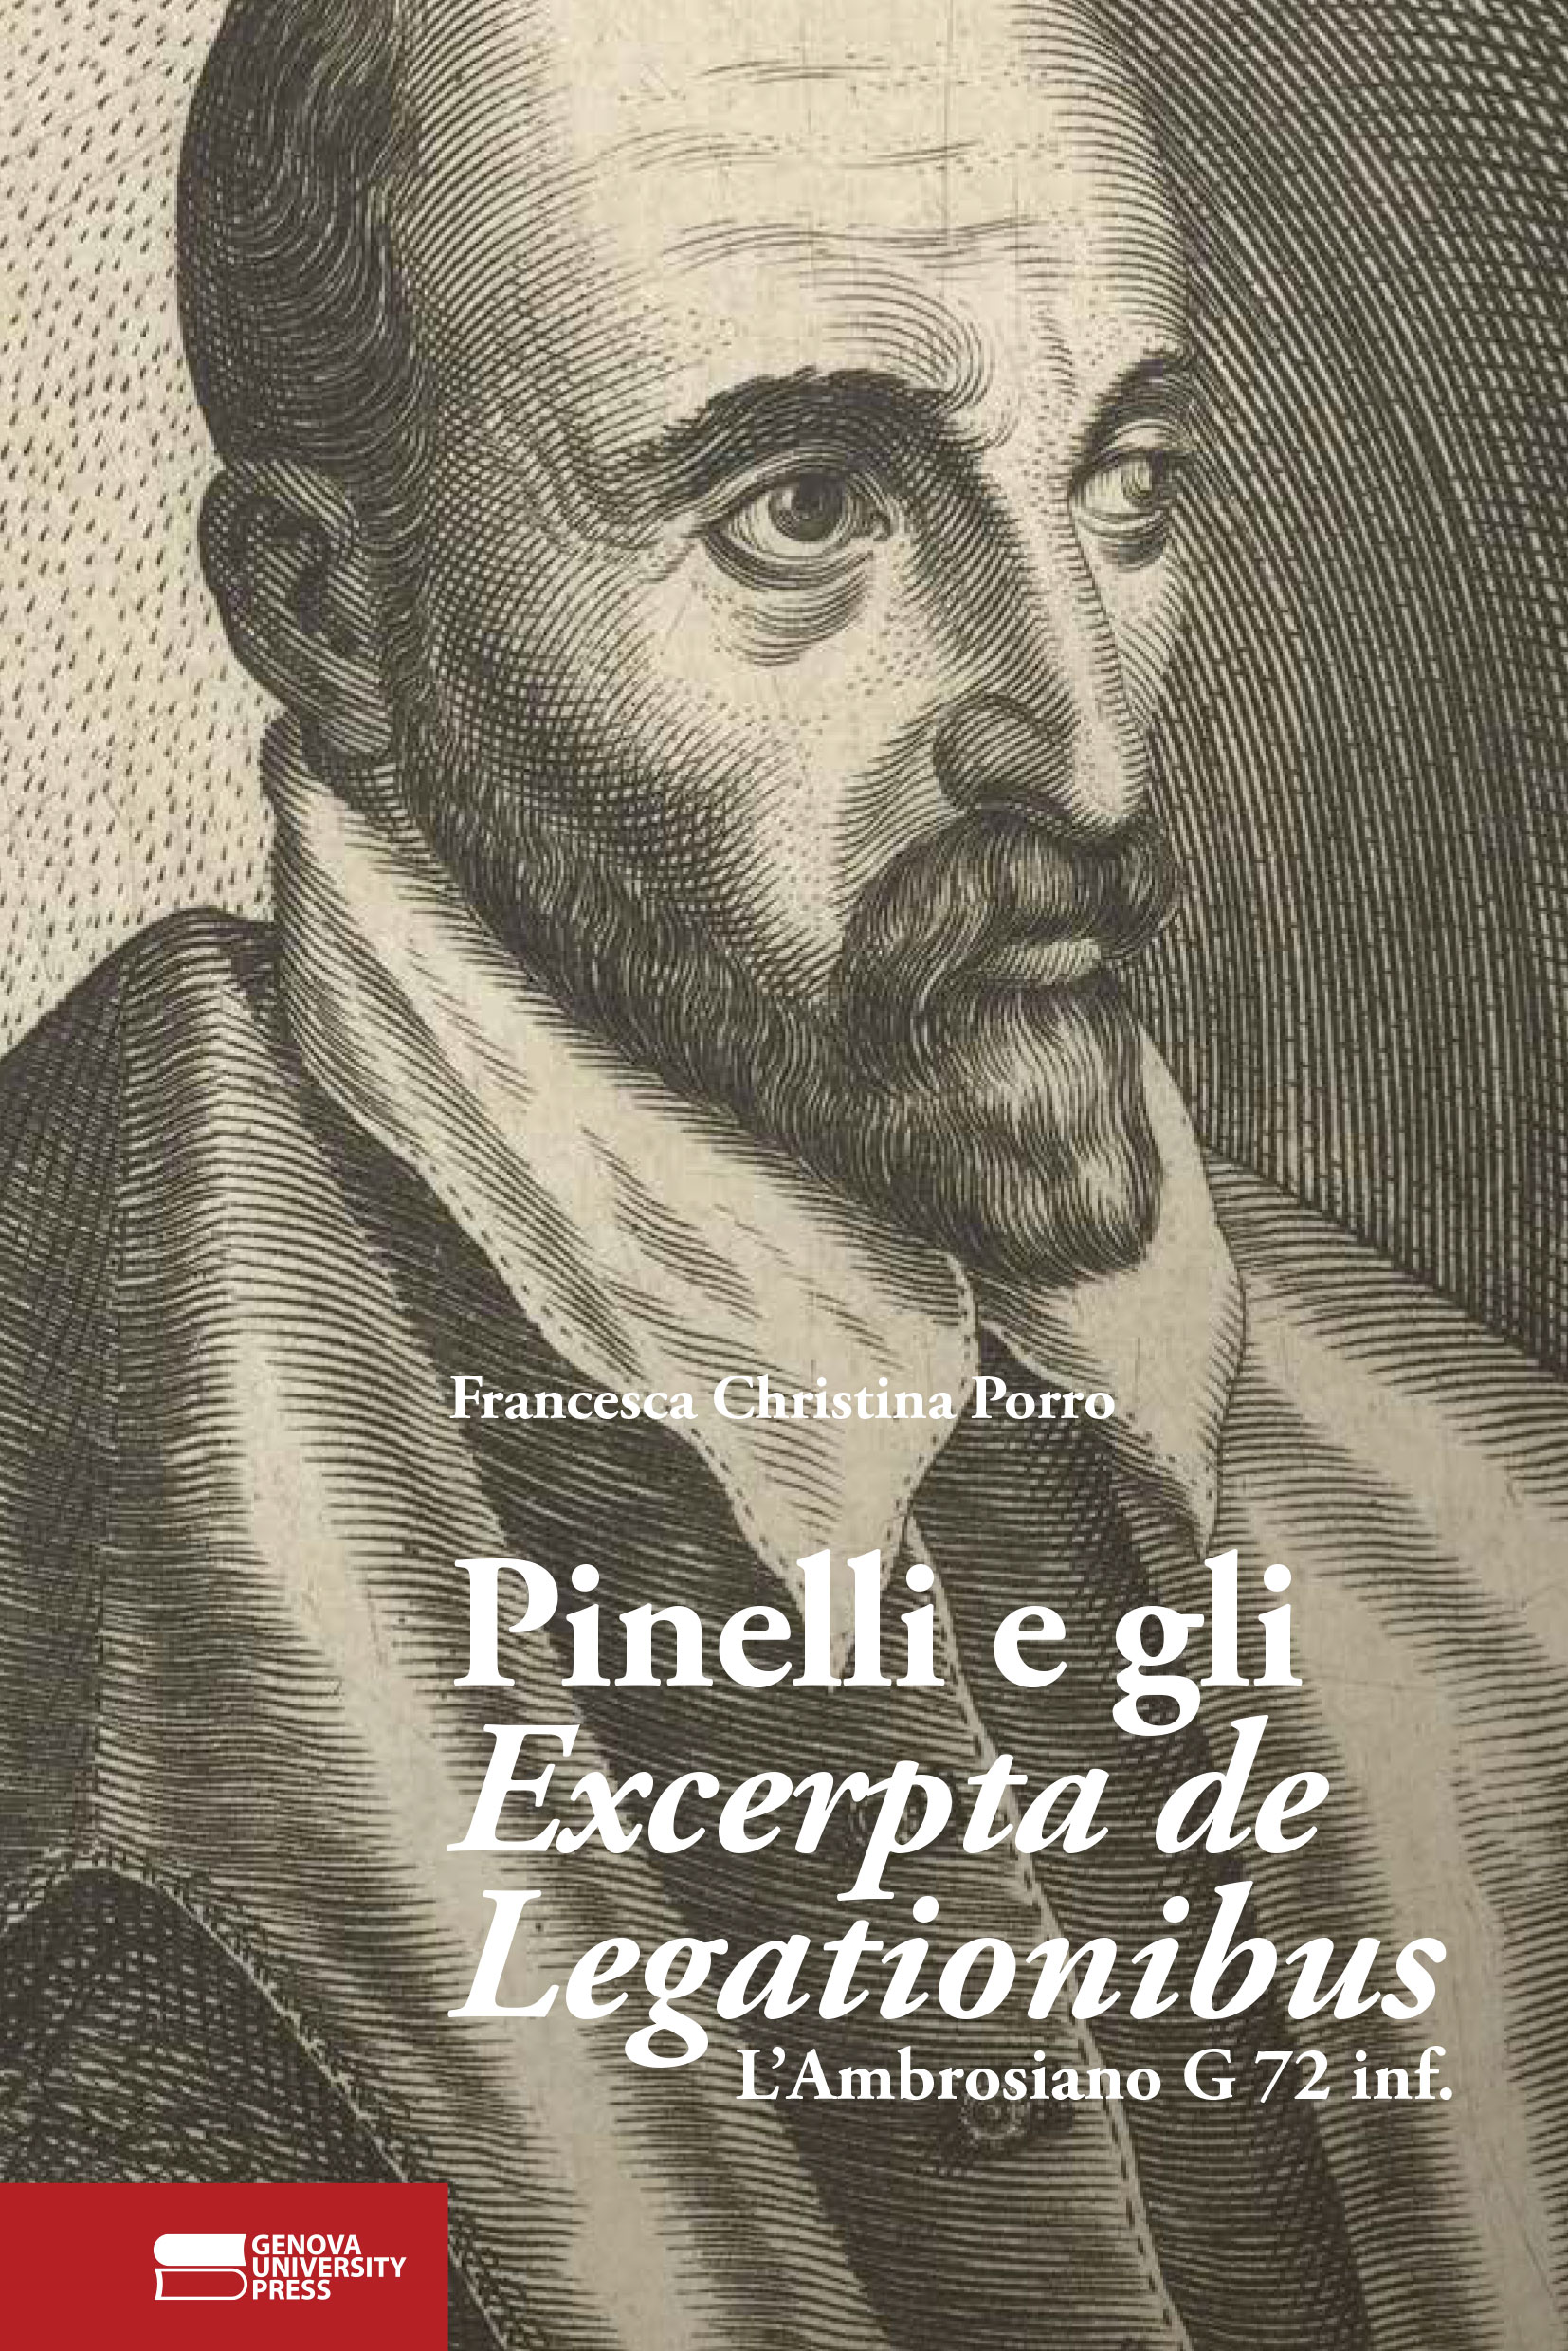 Pinelli e gli Excerpta de Legationibus